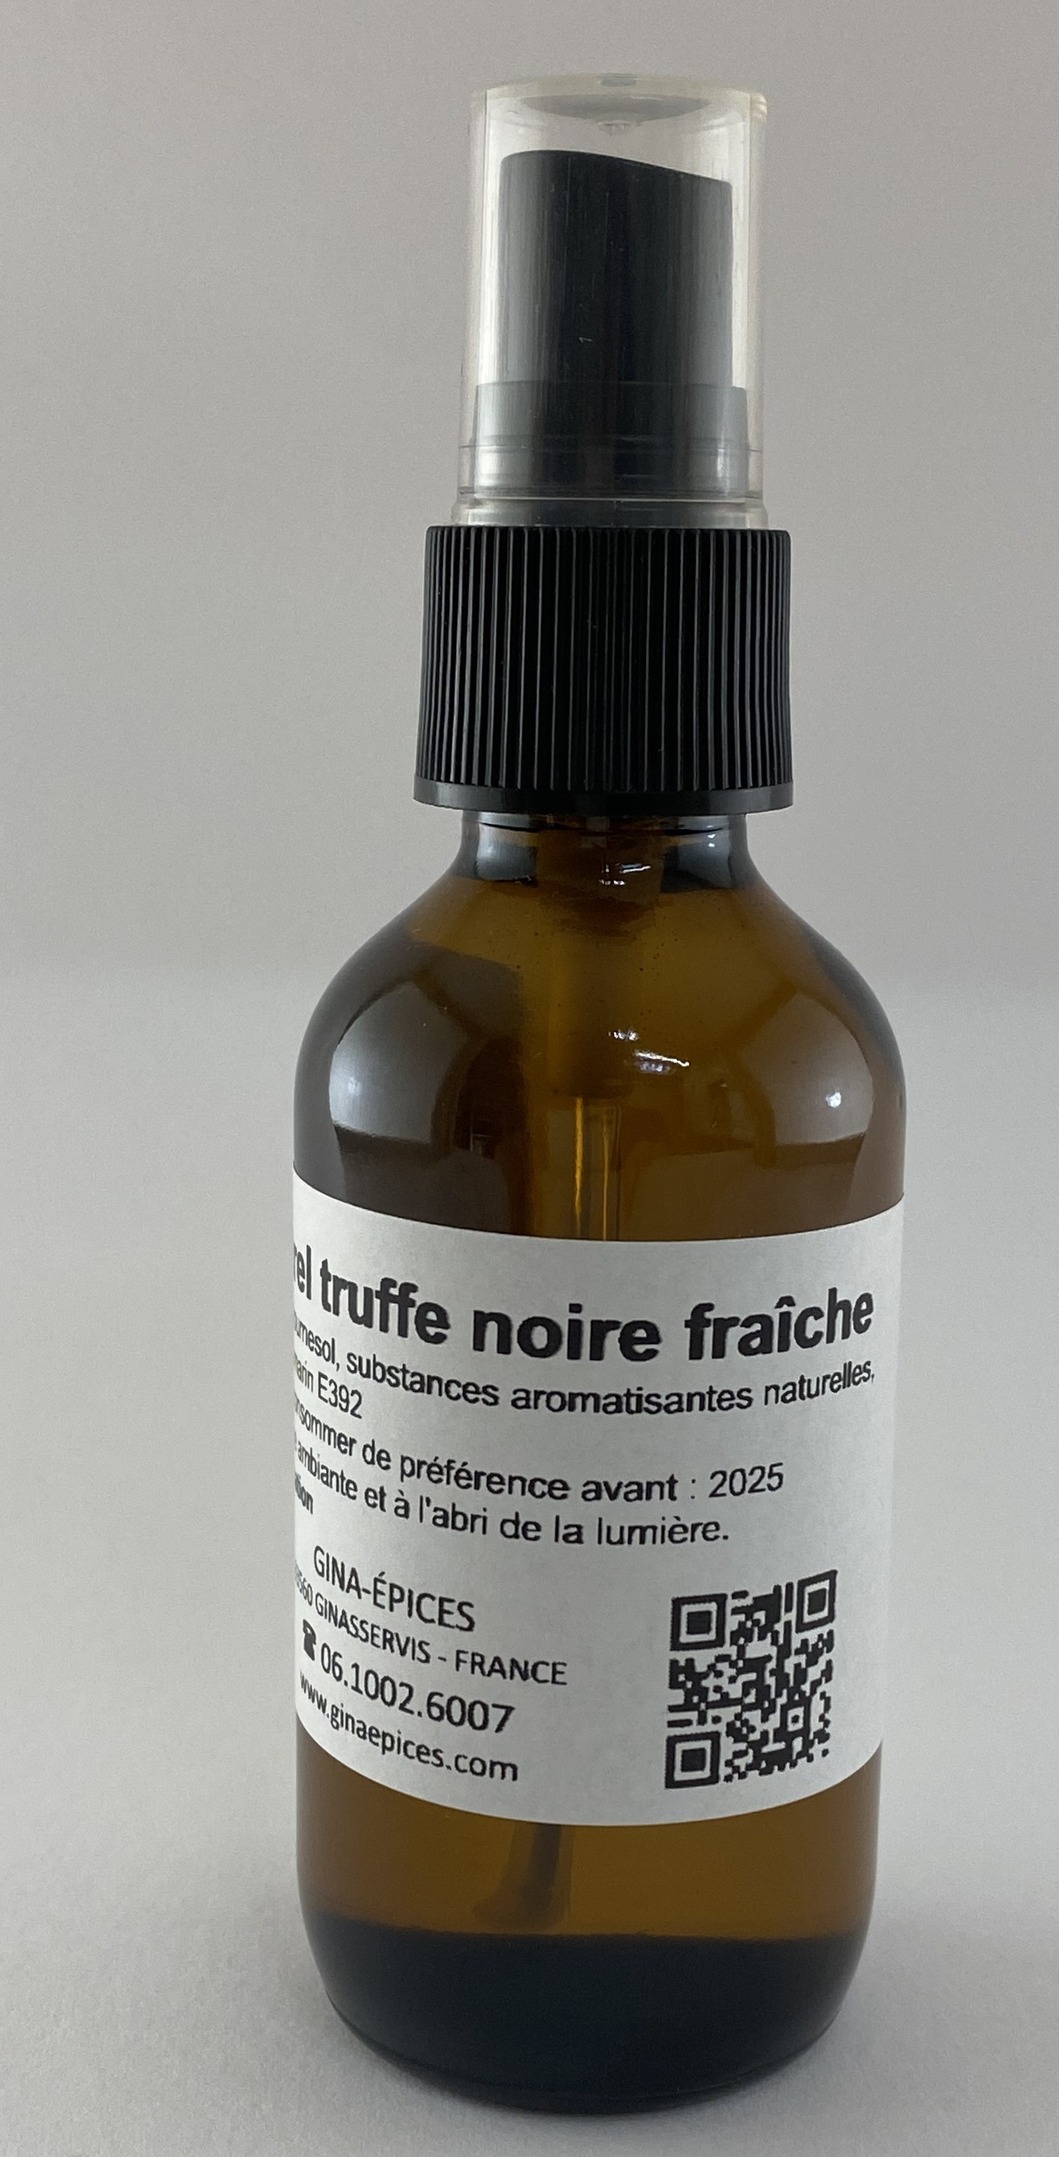 Arôme Truffe noire fraiche 60 ml